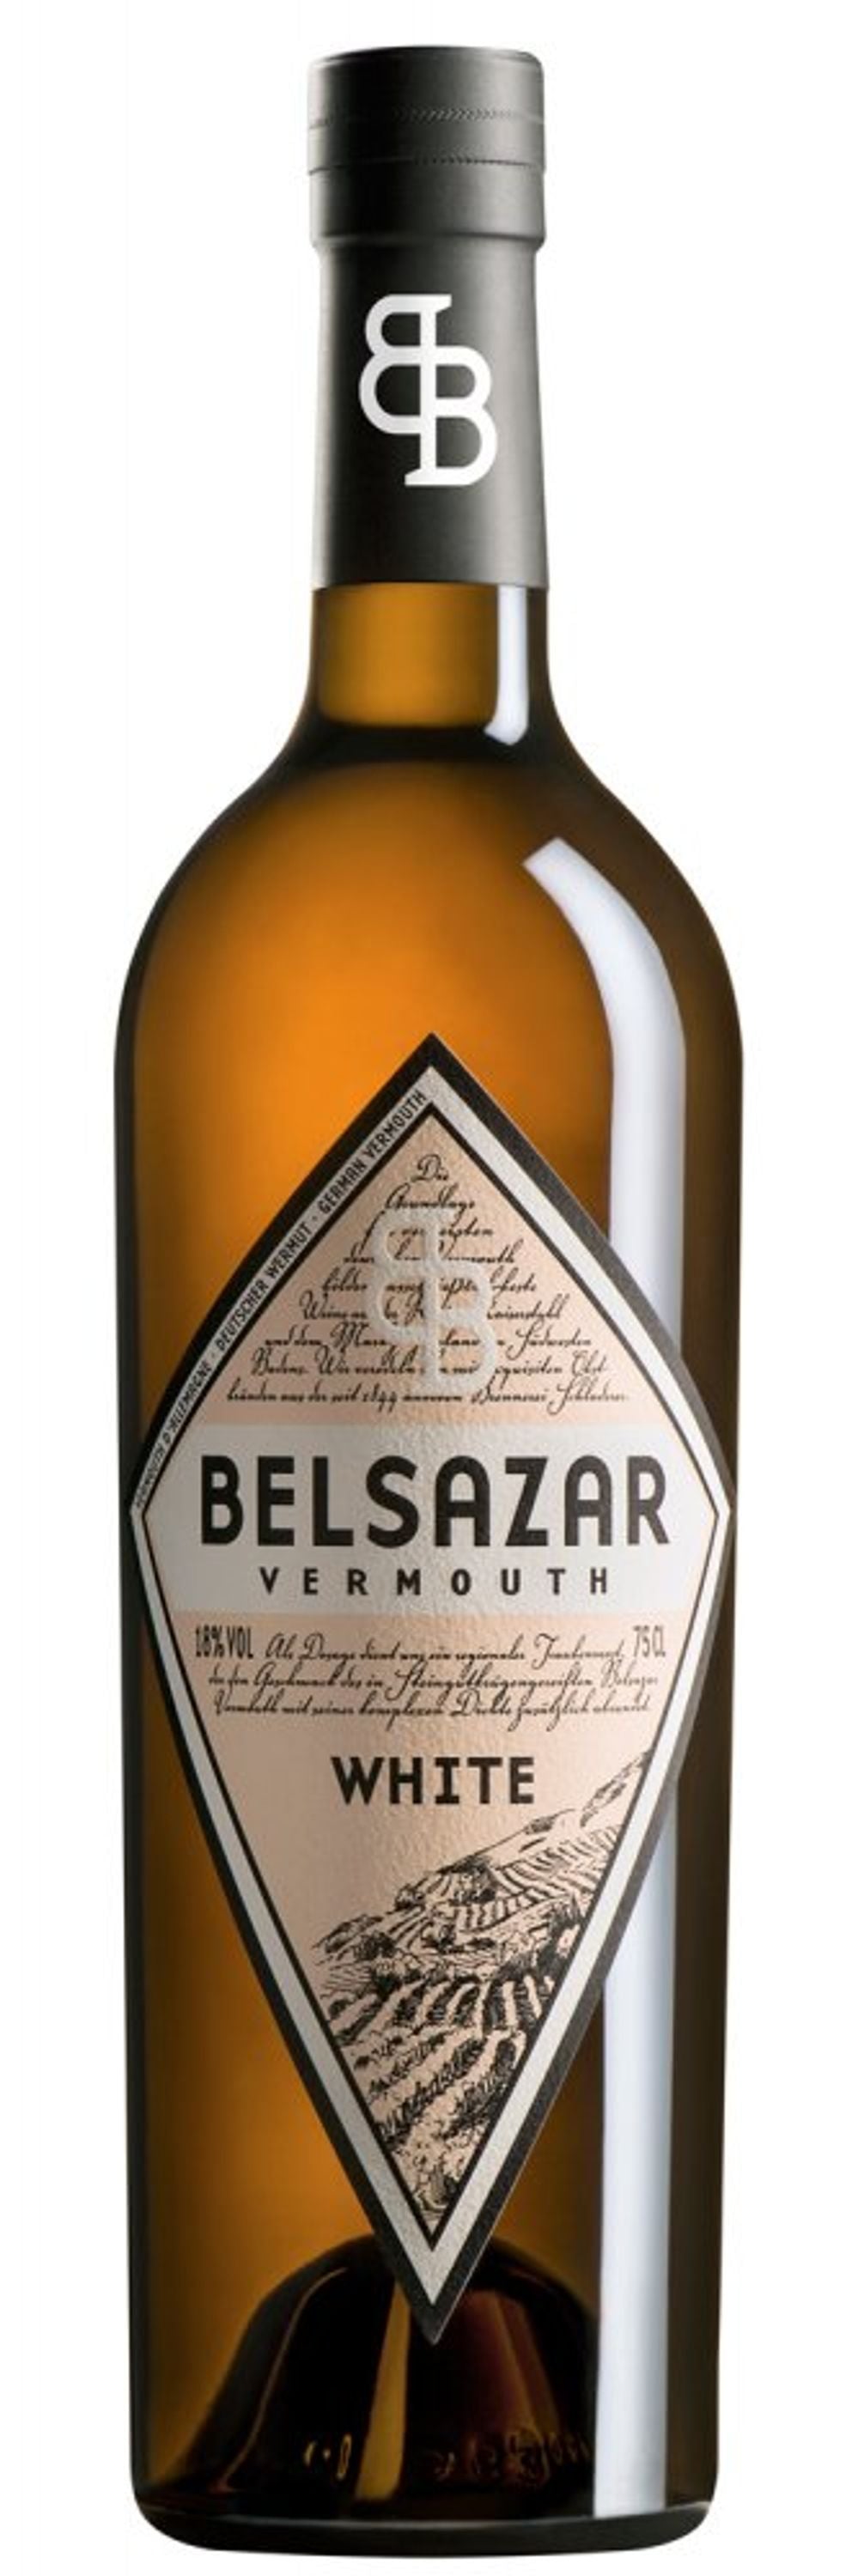 Belsazar Vermouth White 0,7l, alc. 18 Vol.-%,  Wermut Deutschland